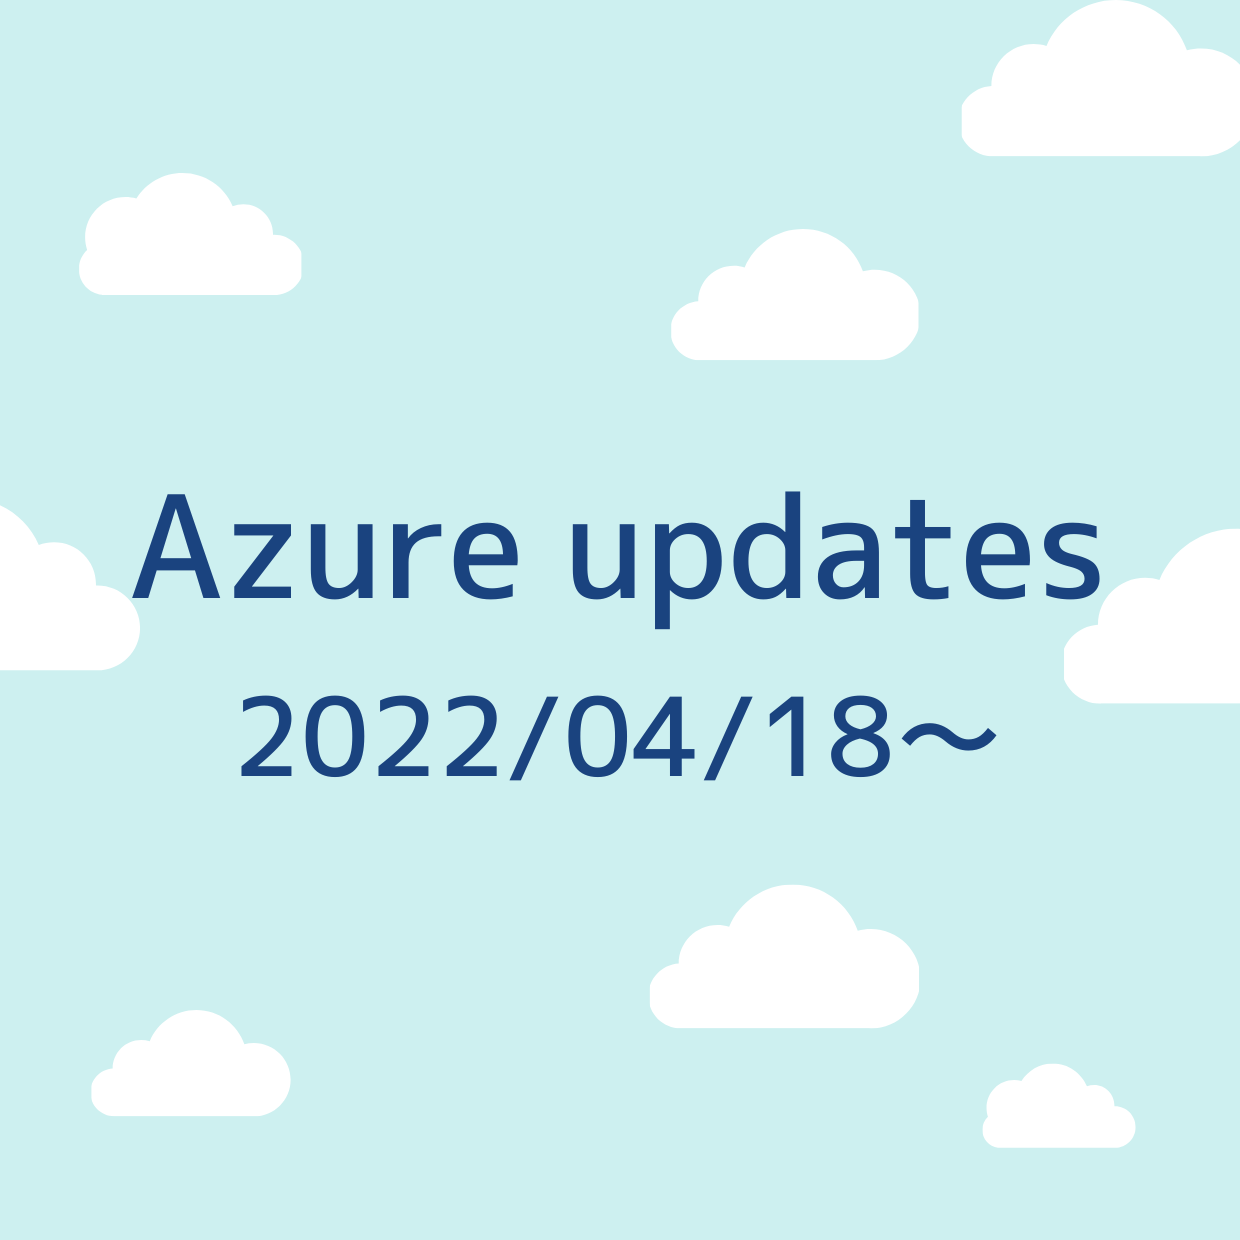 2022/04/18 週の Azure updates 日本語速報